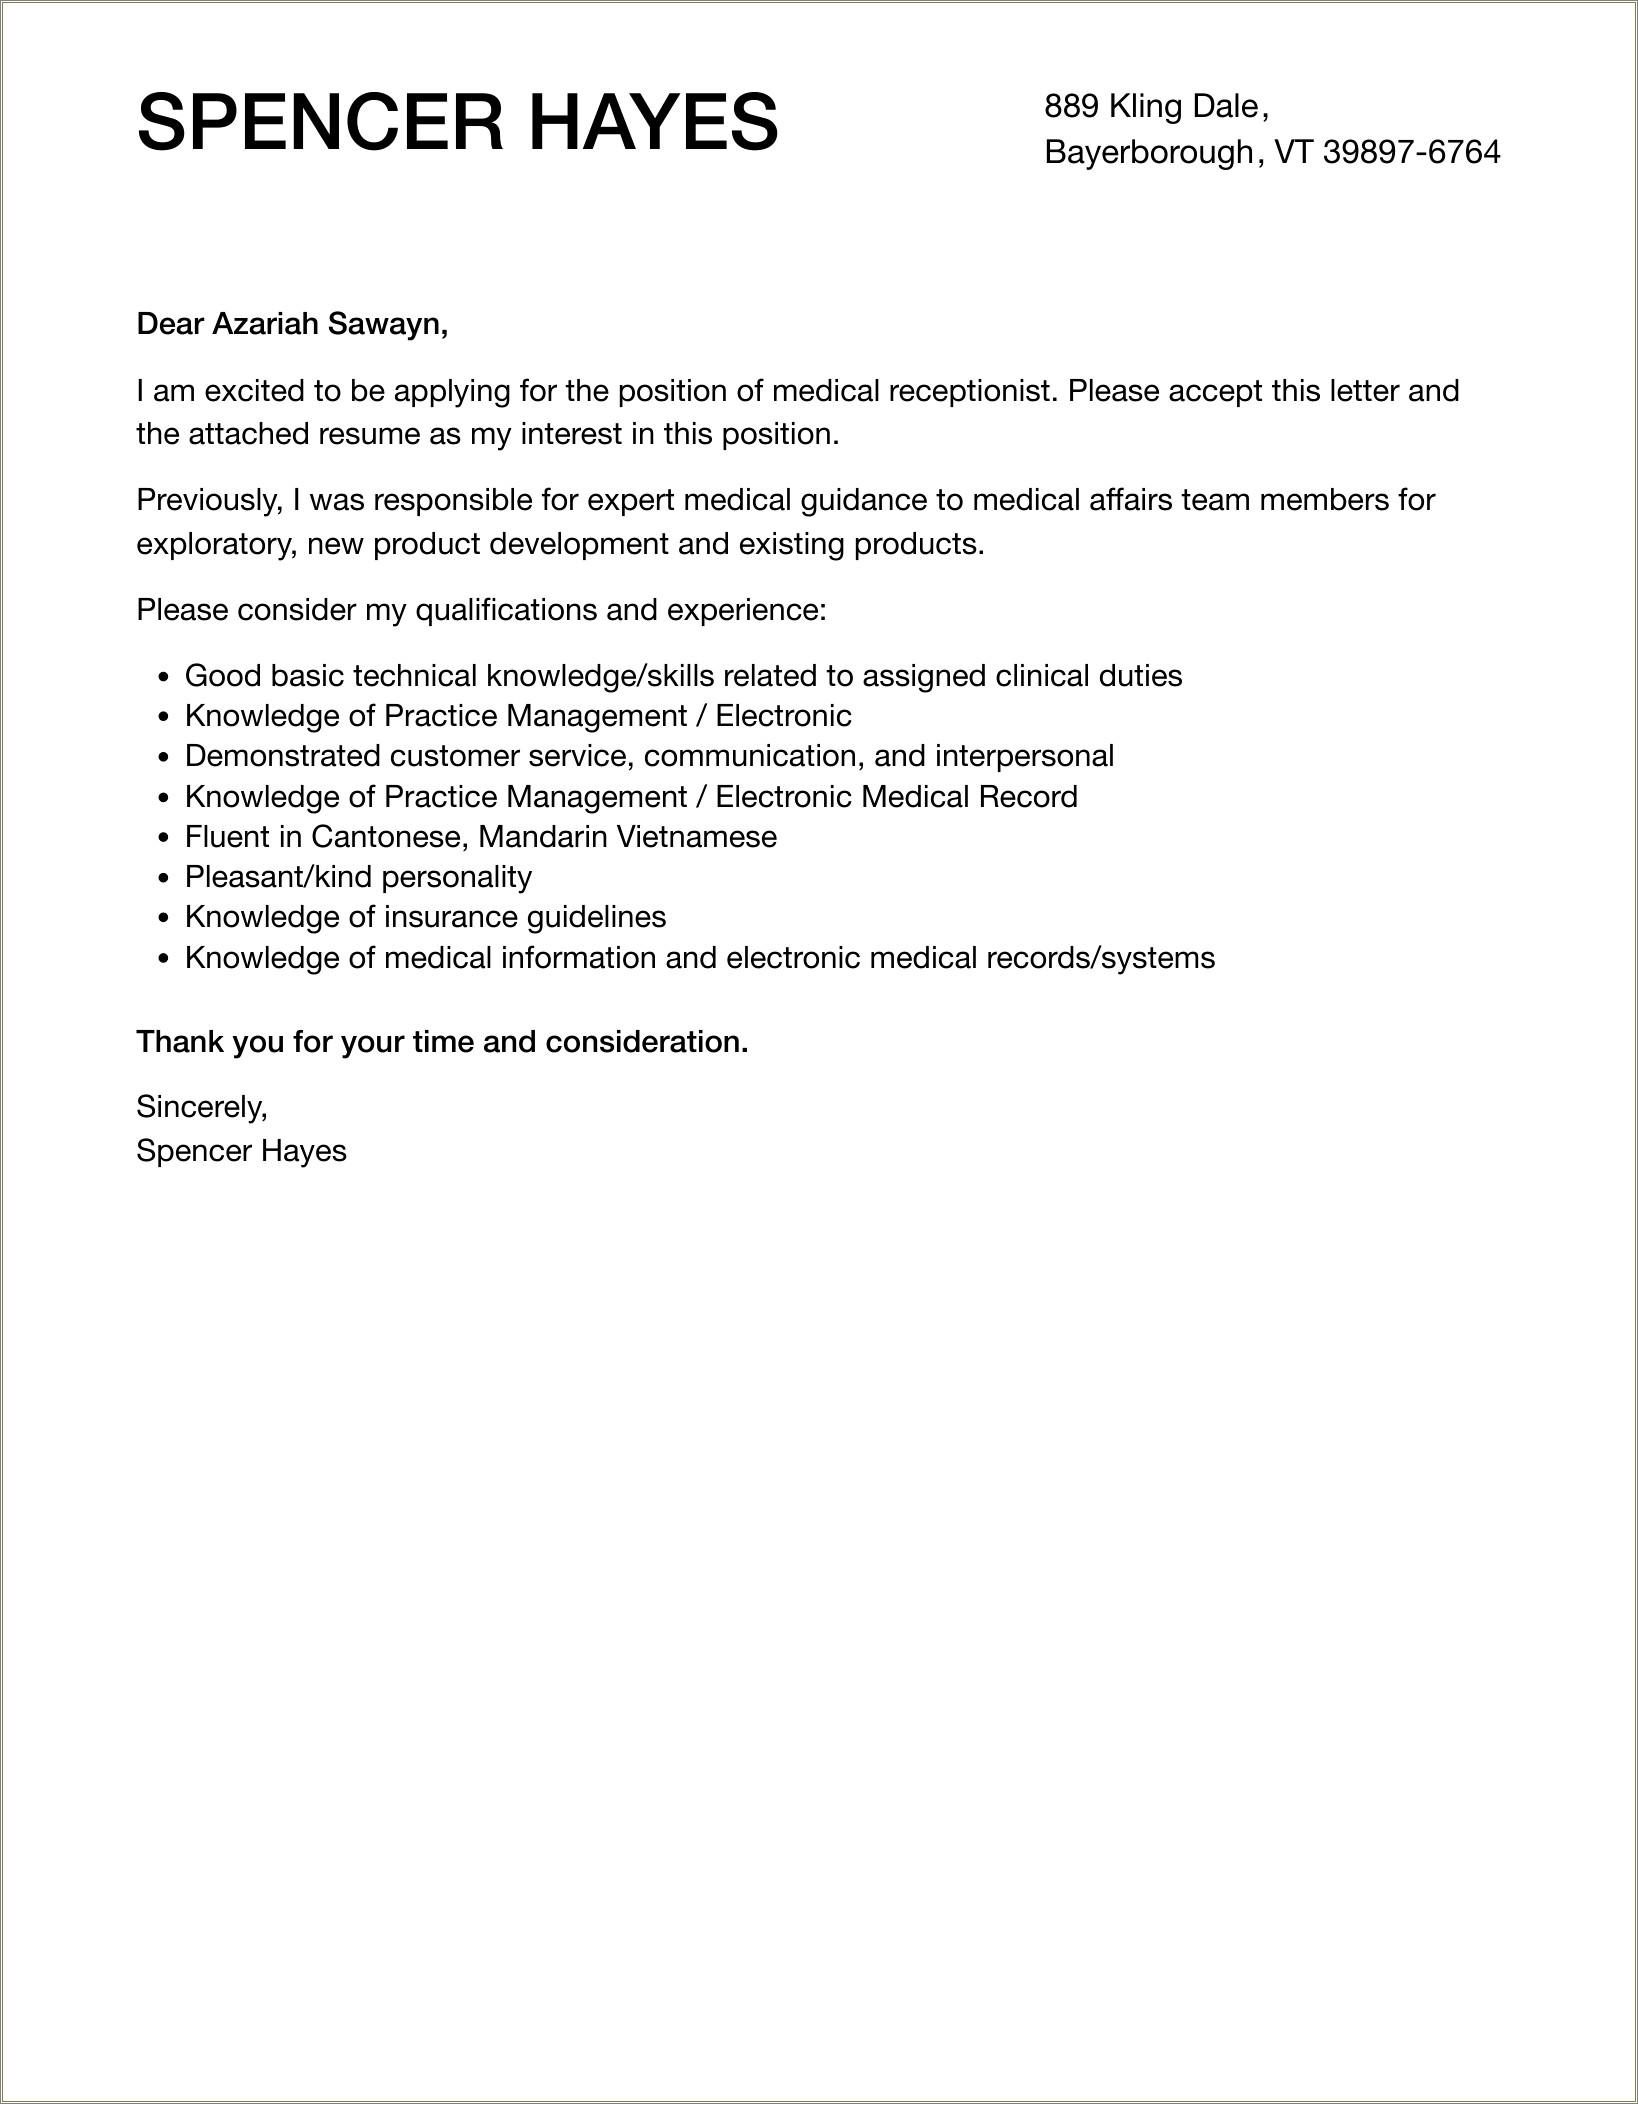 Resume Cover Letter Samples For Medical Receptionist